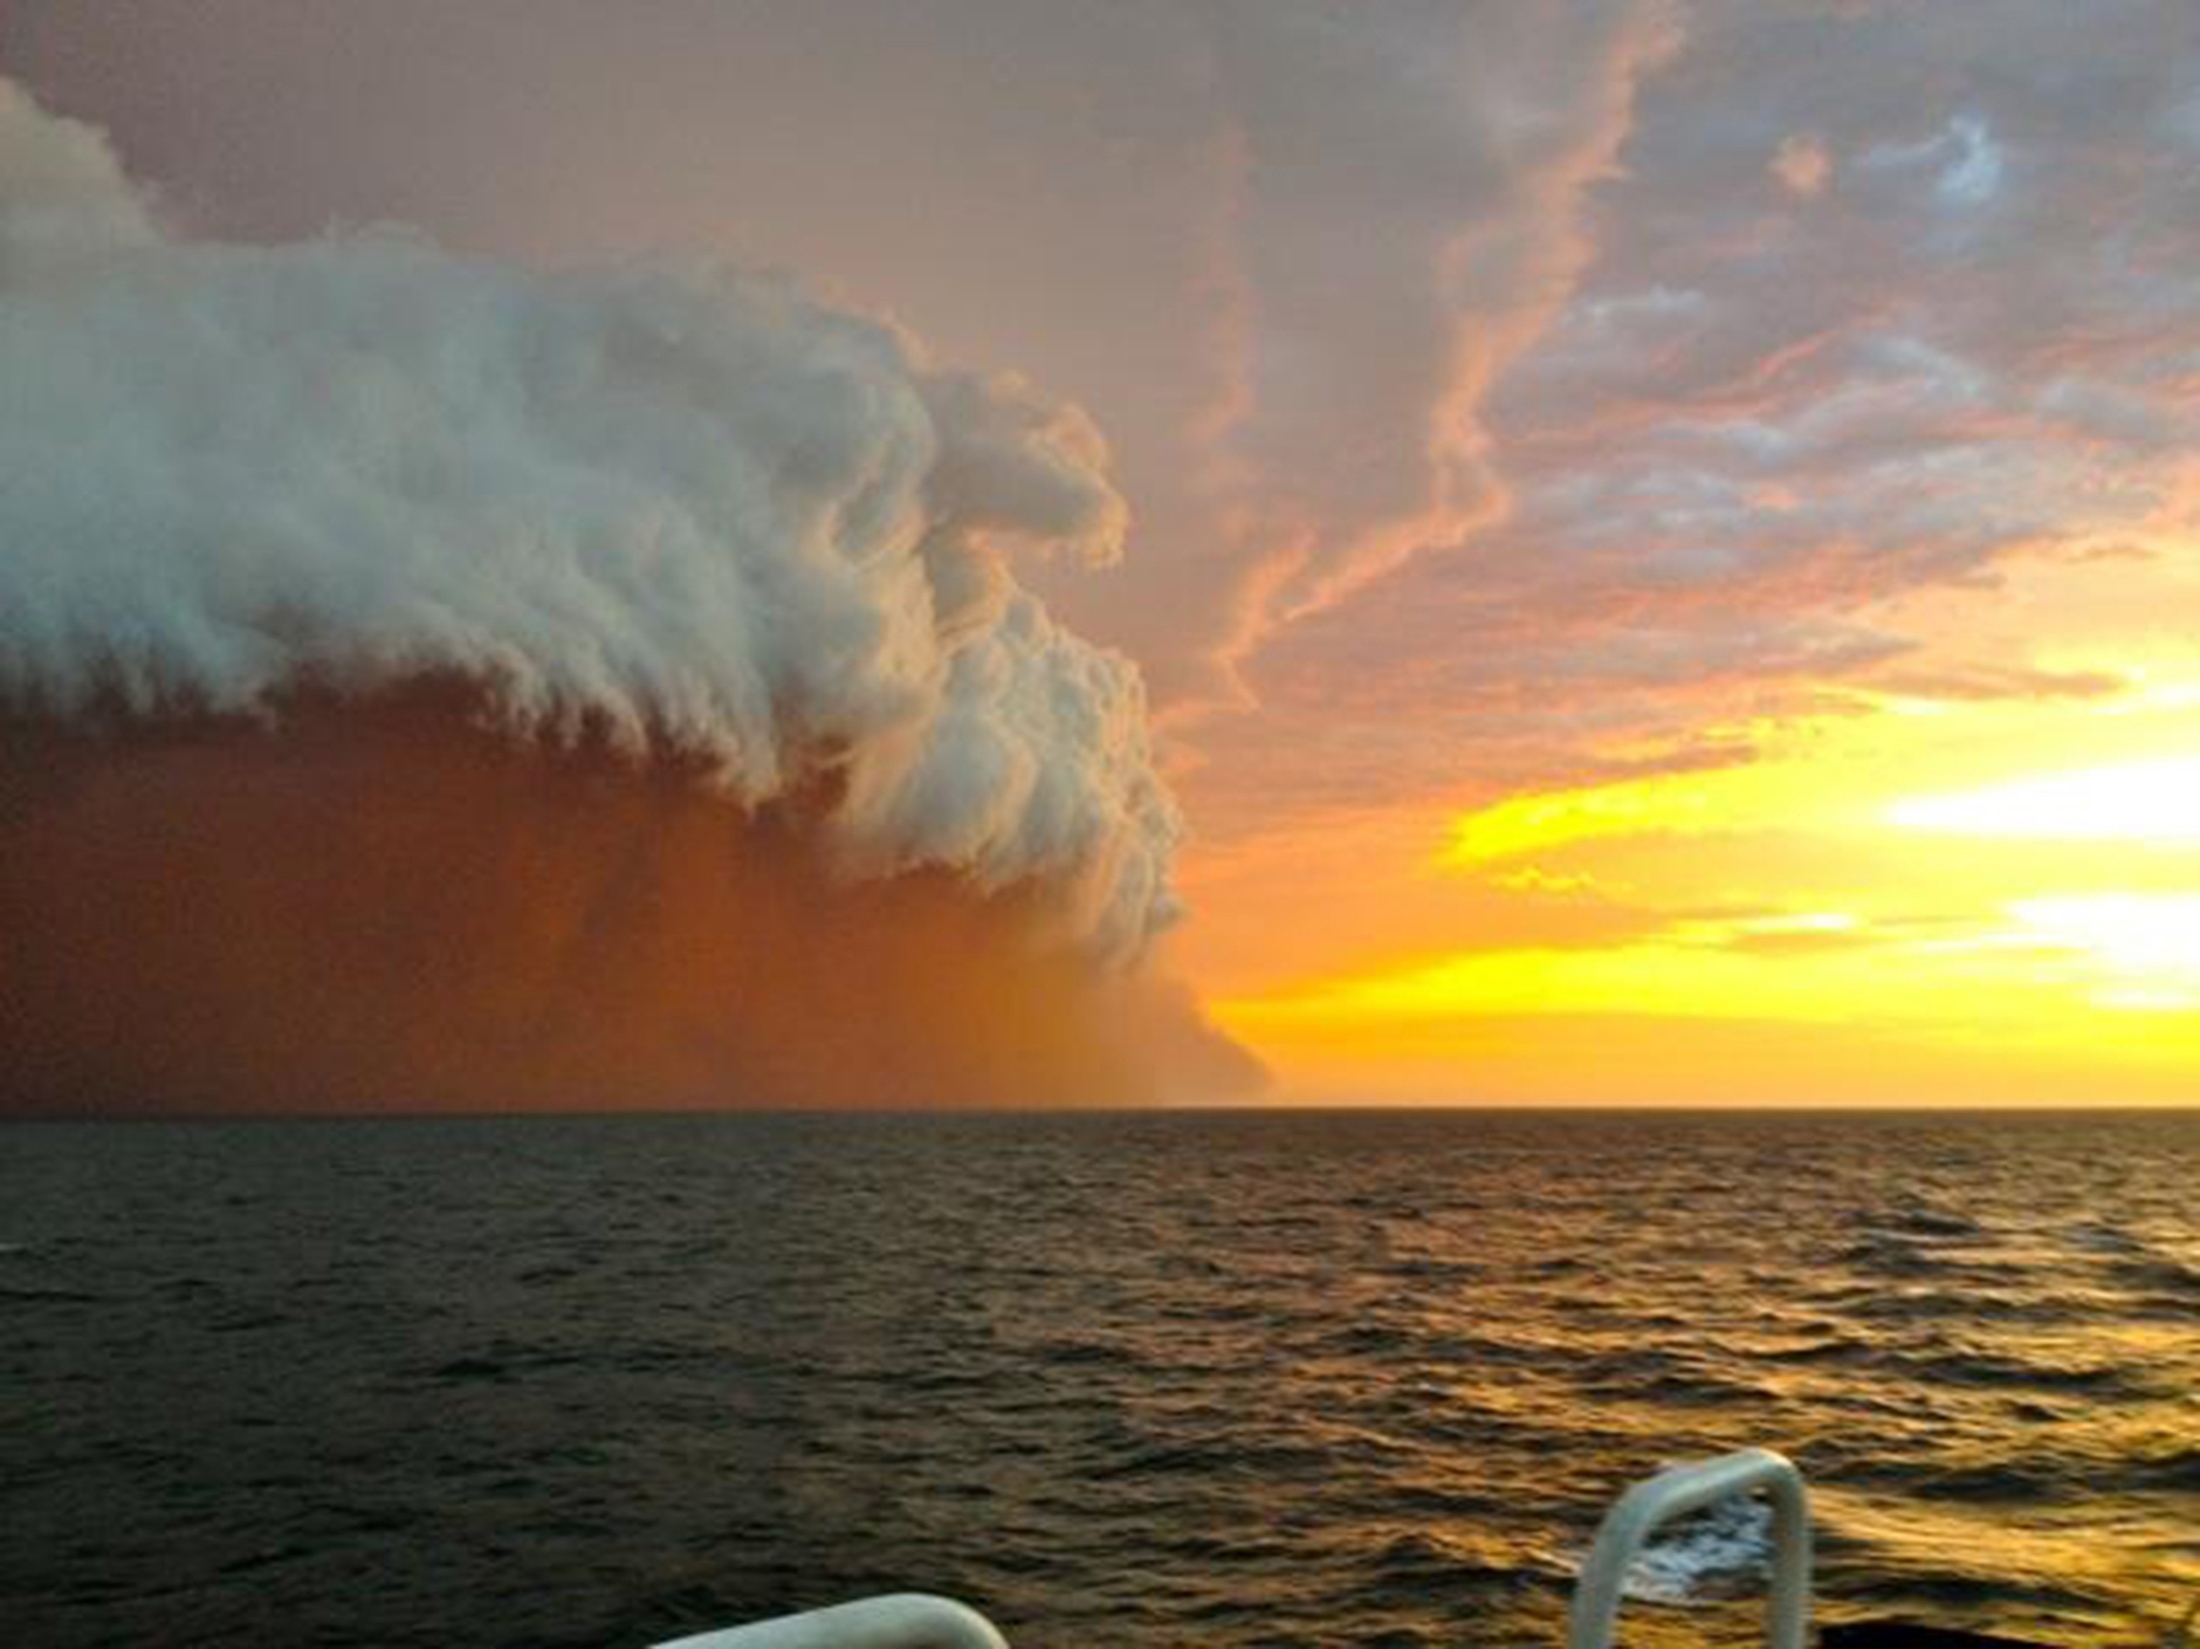 Δέος από το γιγαντιαίο σύννεφο σκόνης στην Αυστραλία – Εντυπωσιακό video και φωτογραφίες